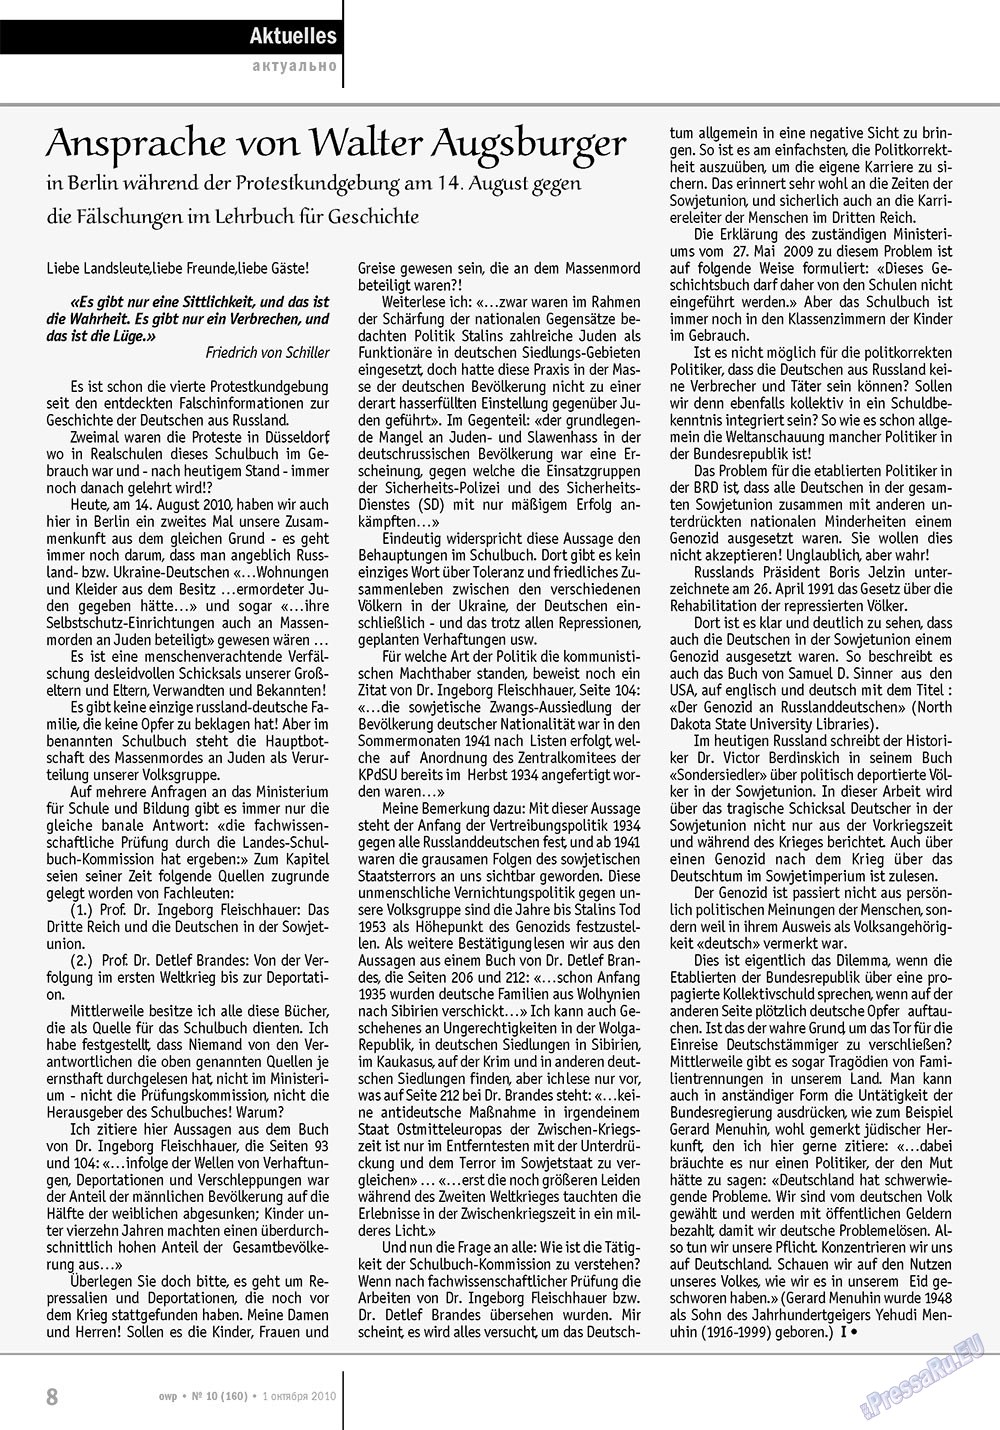 Ost-West Panorama (журнал). 2010 год, номер 10, стр. 8